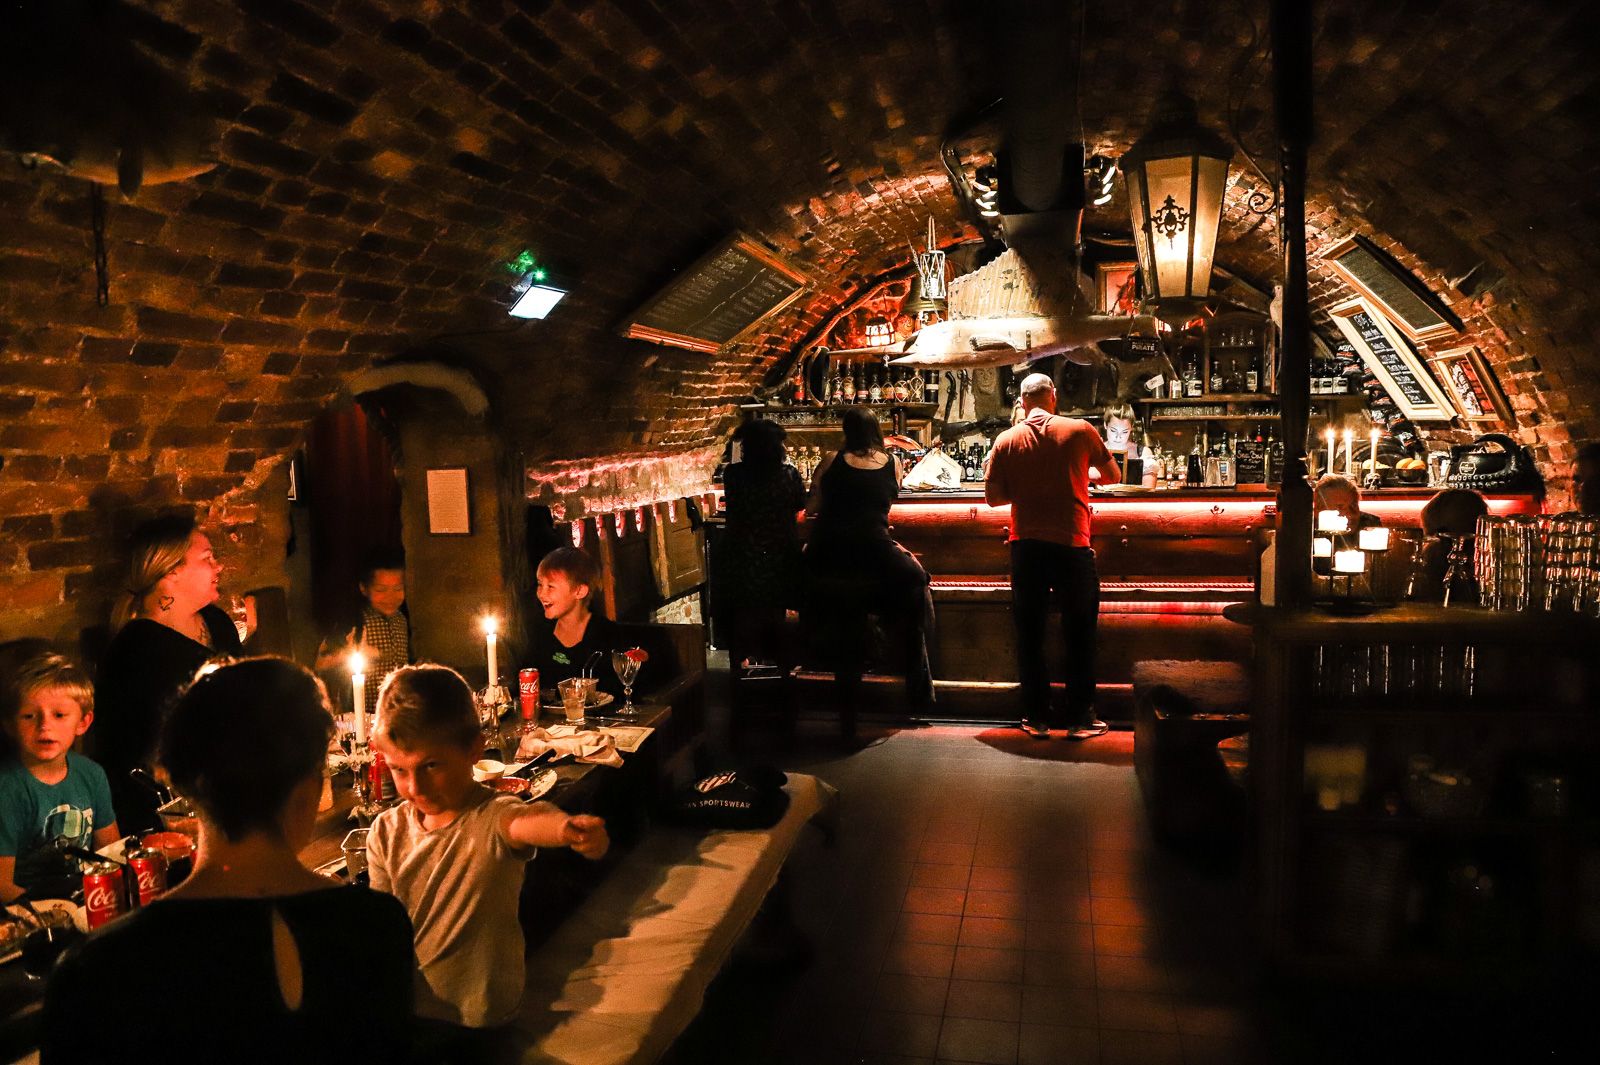 An underground bar in Stockholm, Sweden